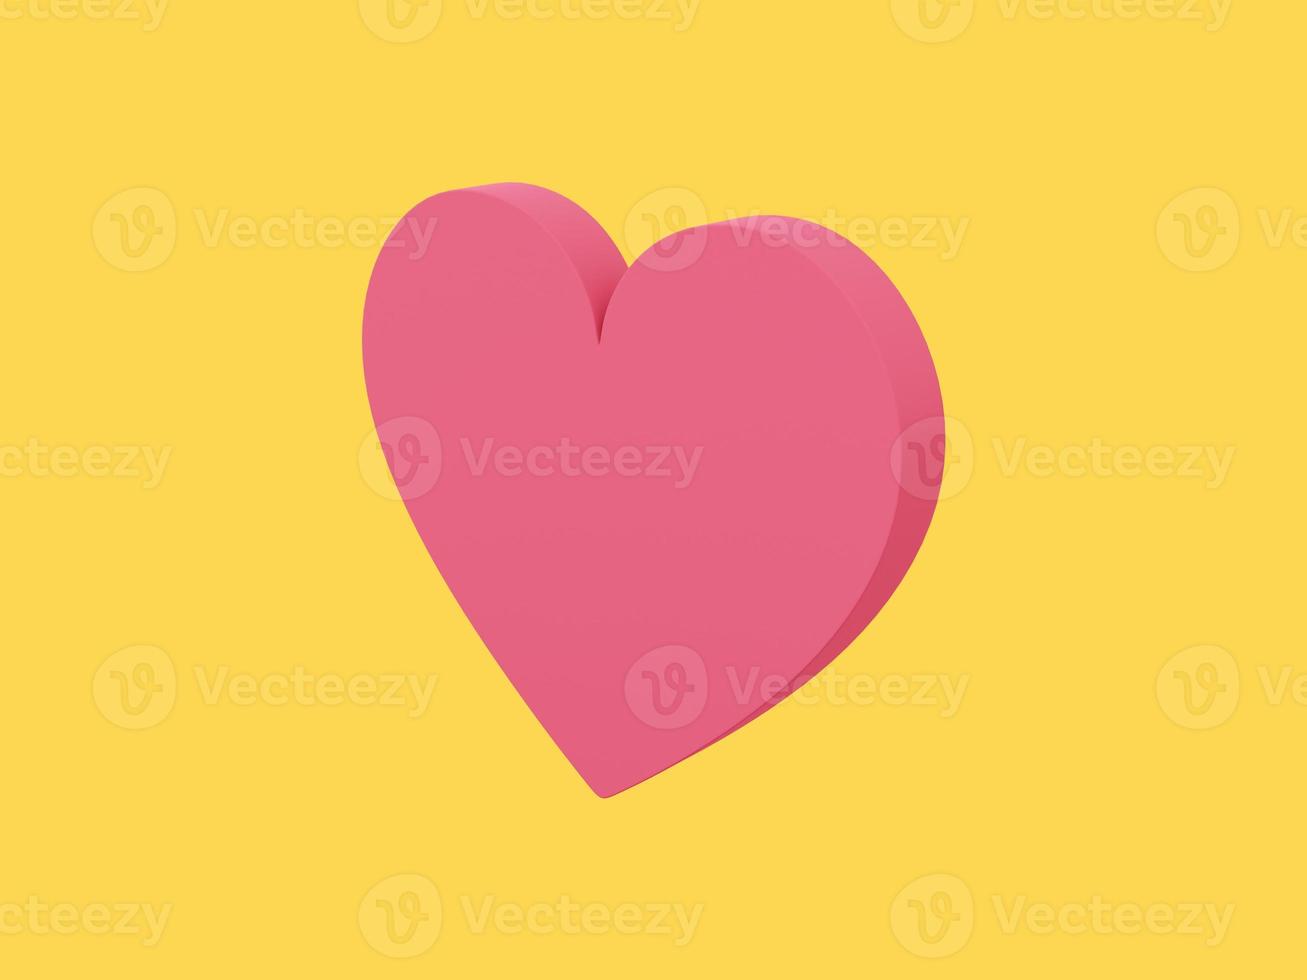 coração plano. cor única vermelha. símbolo do amor. em um fundo amarelo monocromático. vista do lado direito. renderização 3D. foto